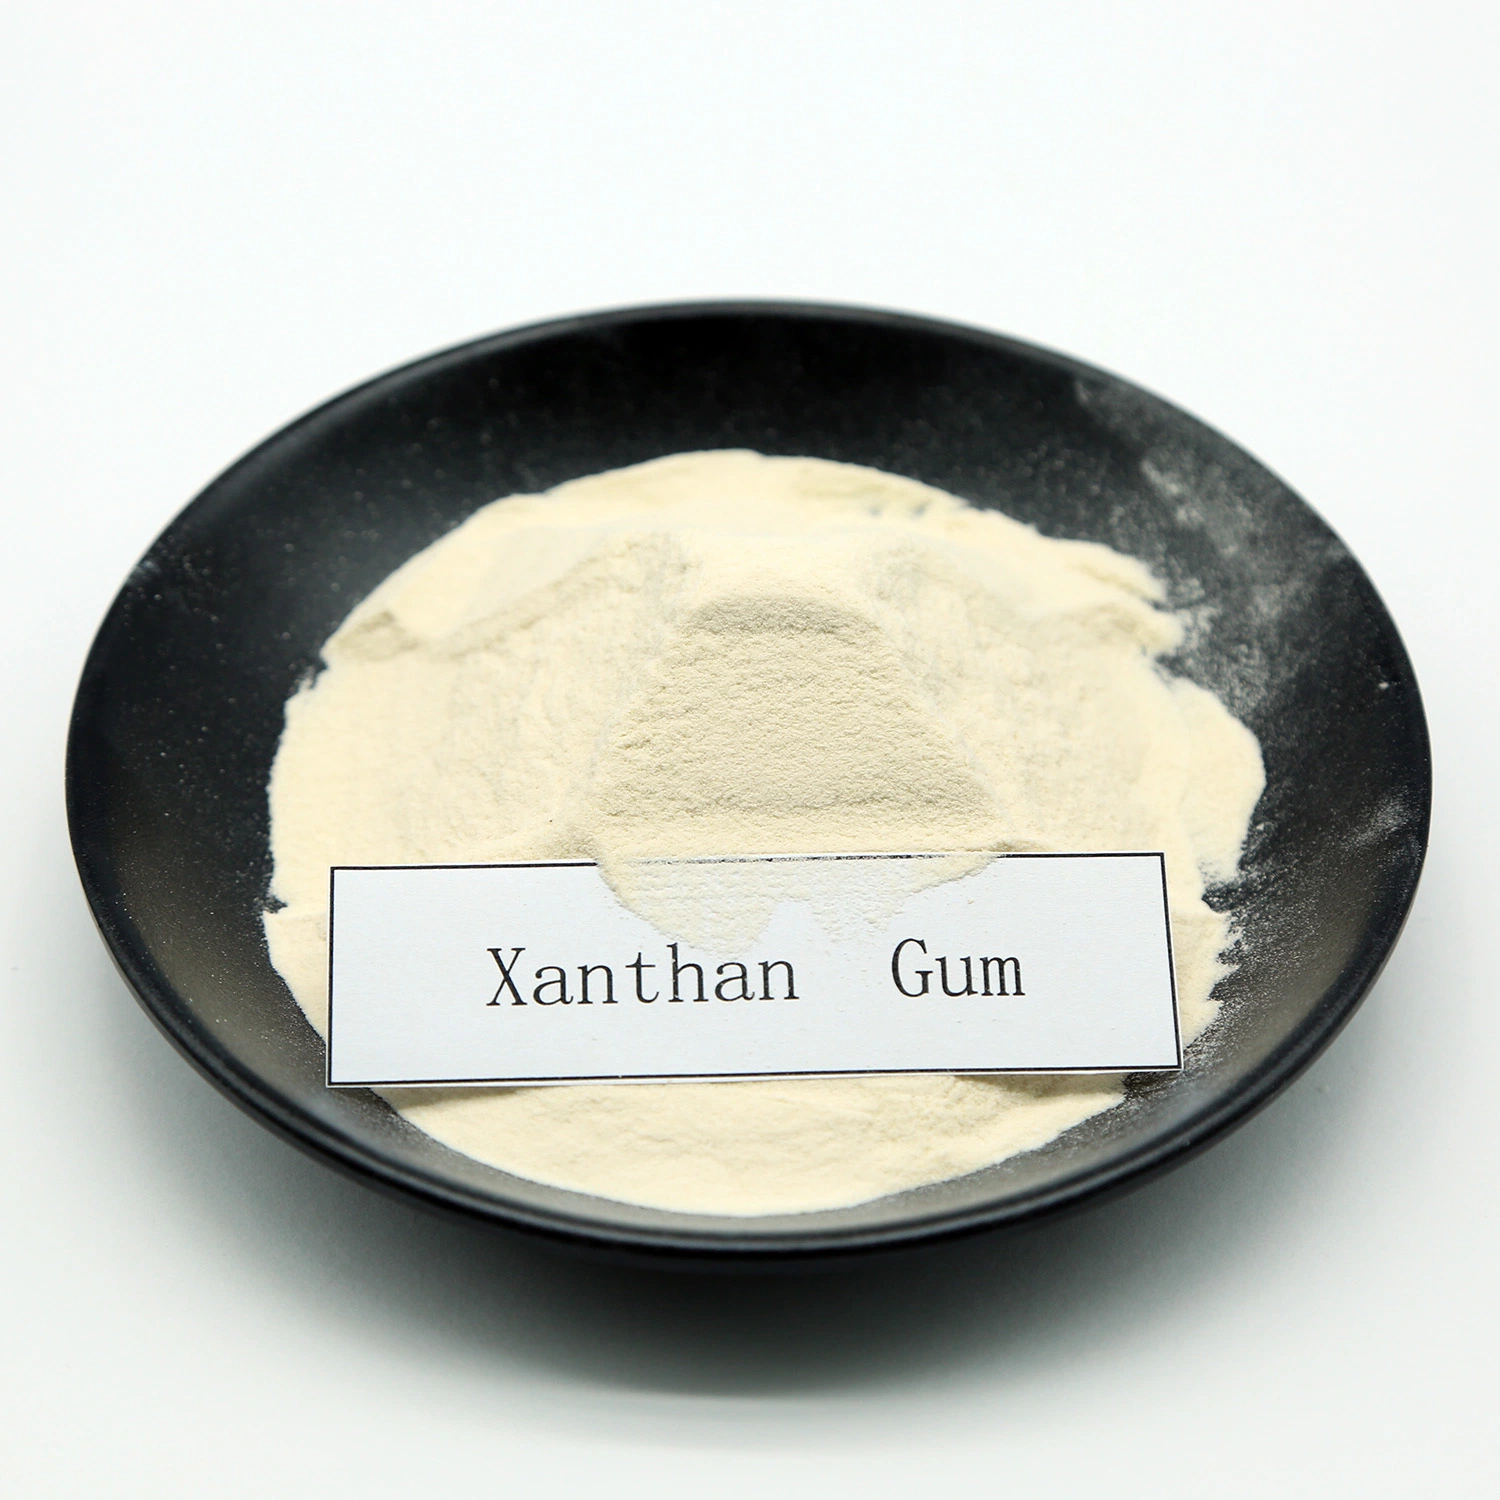 المواد المضافة E415 xanthan gum للمضغ الجوم